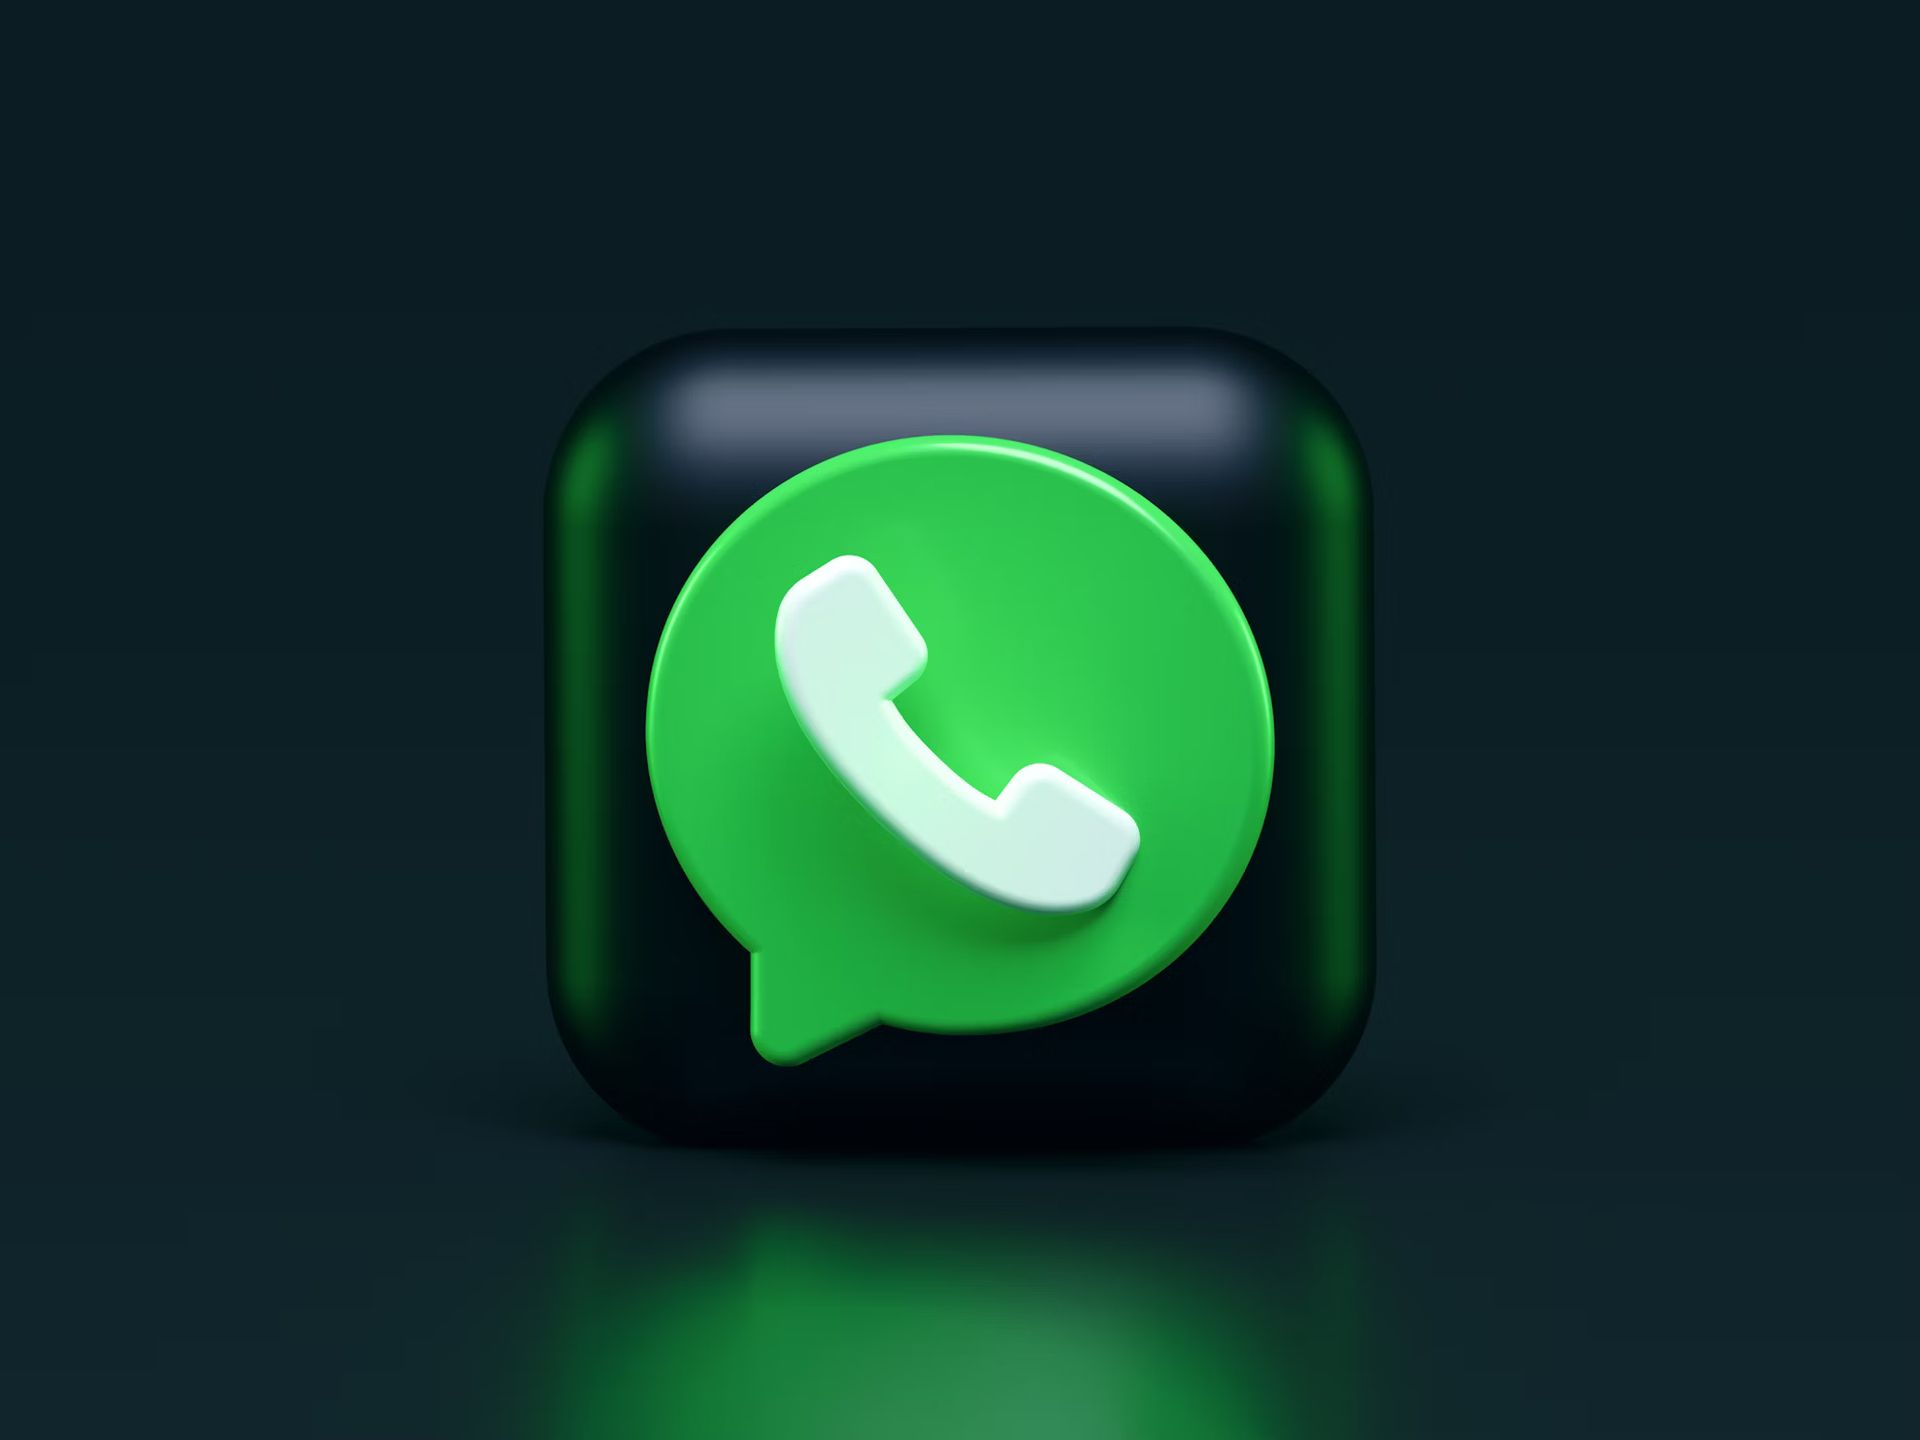 WhatsApp turned green